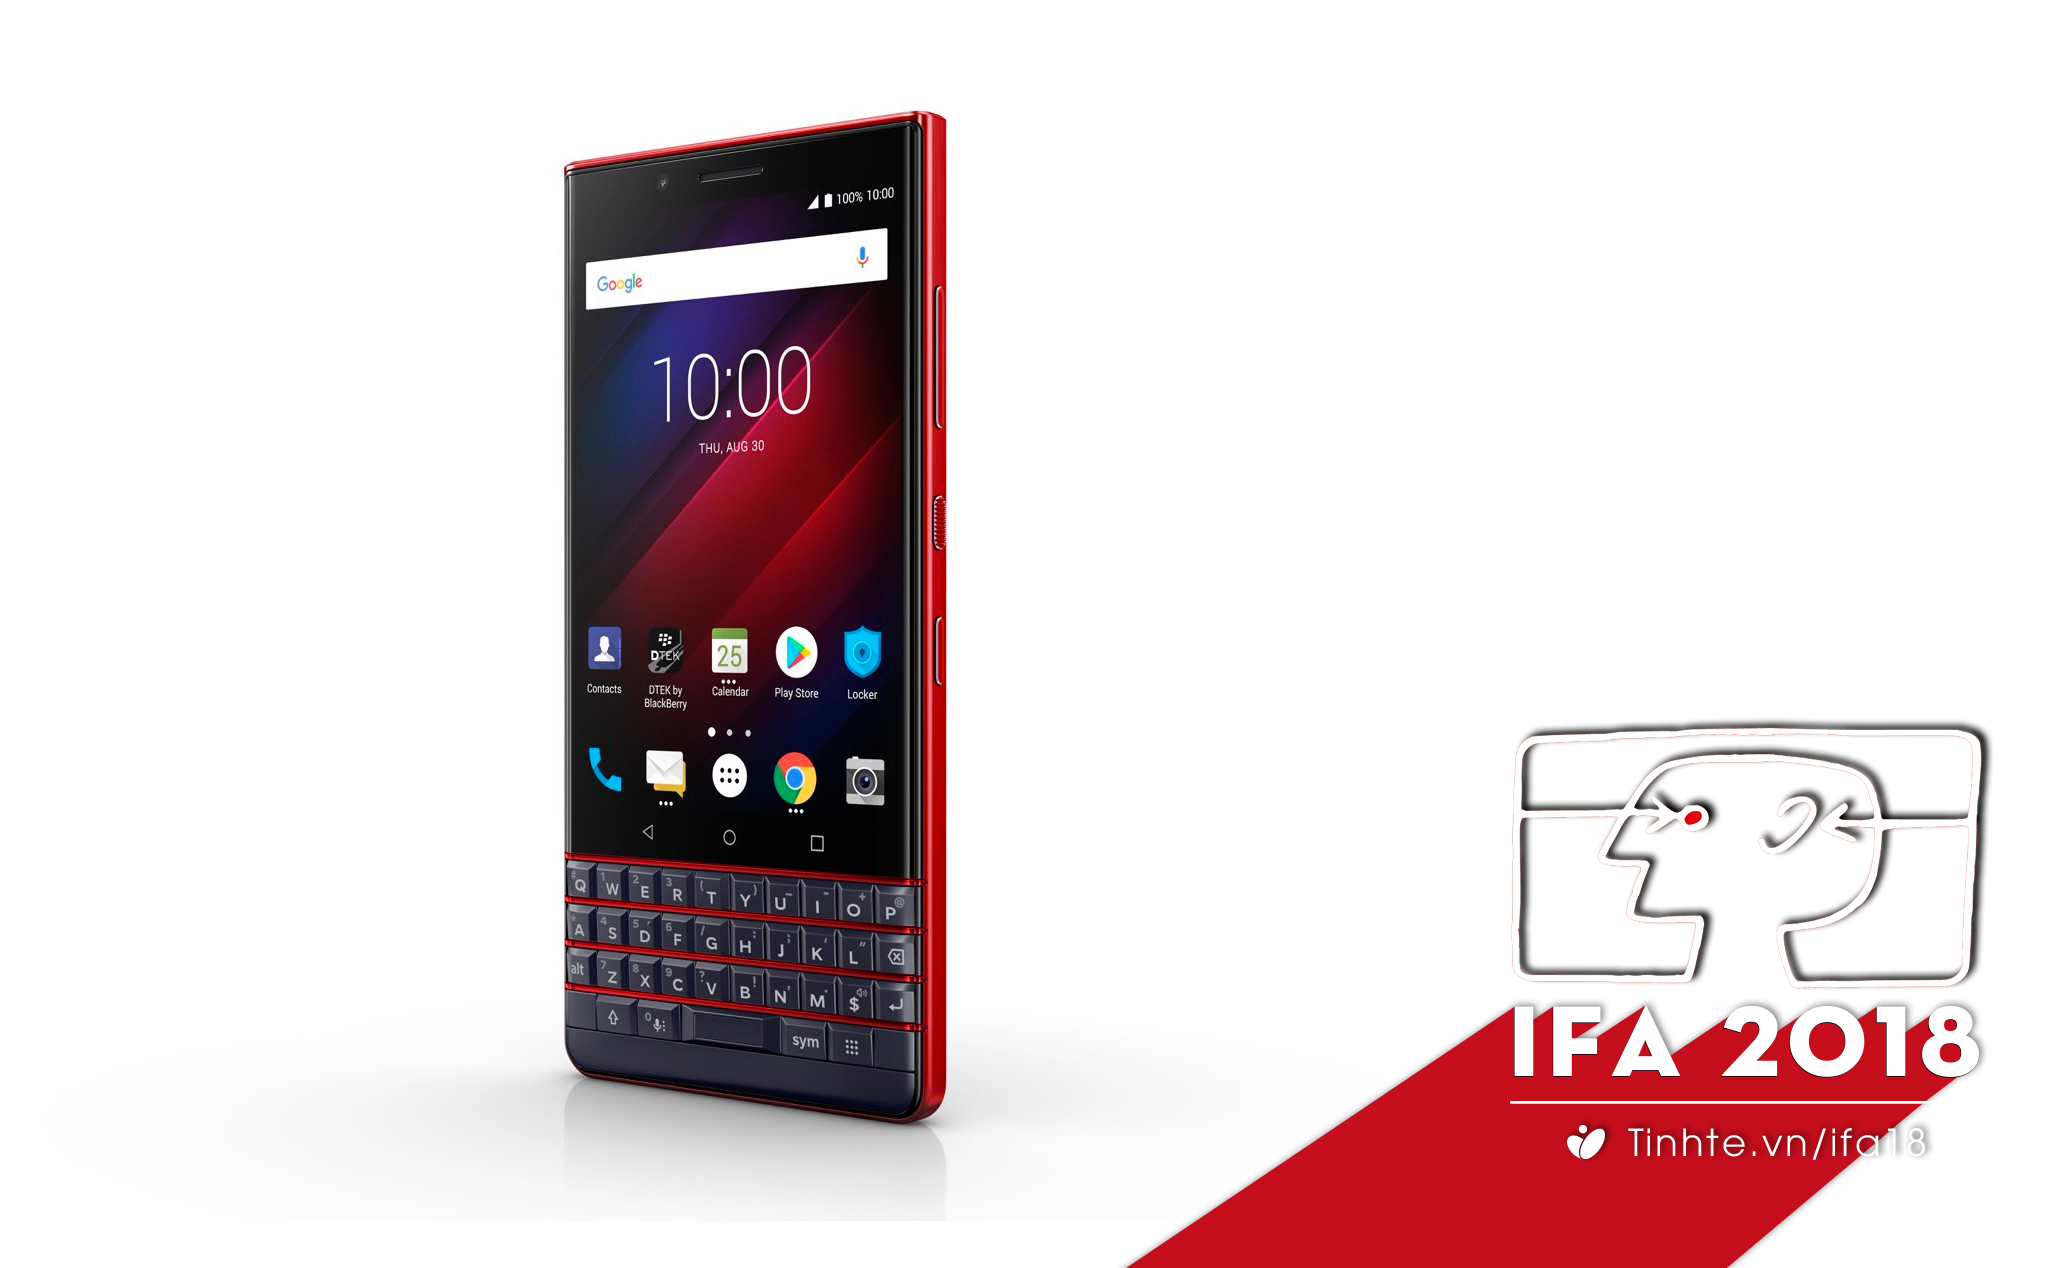 #IFA18: BlackBerry Key2 LE ra mắt với cấu hình thấp hơn, nhiều màu sắc và giá 400 USD